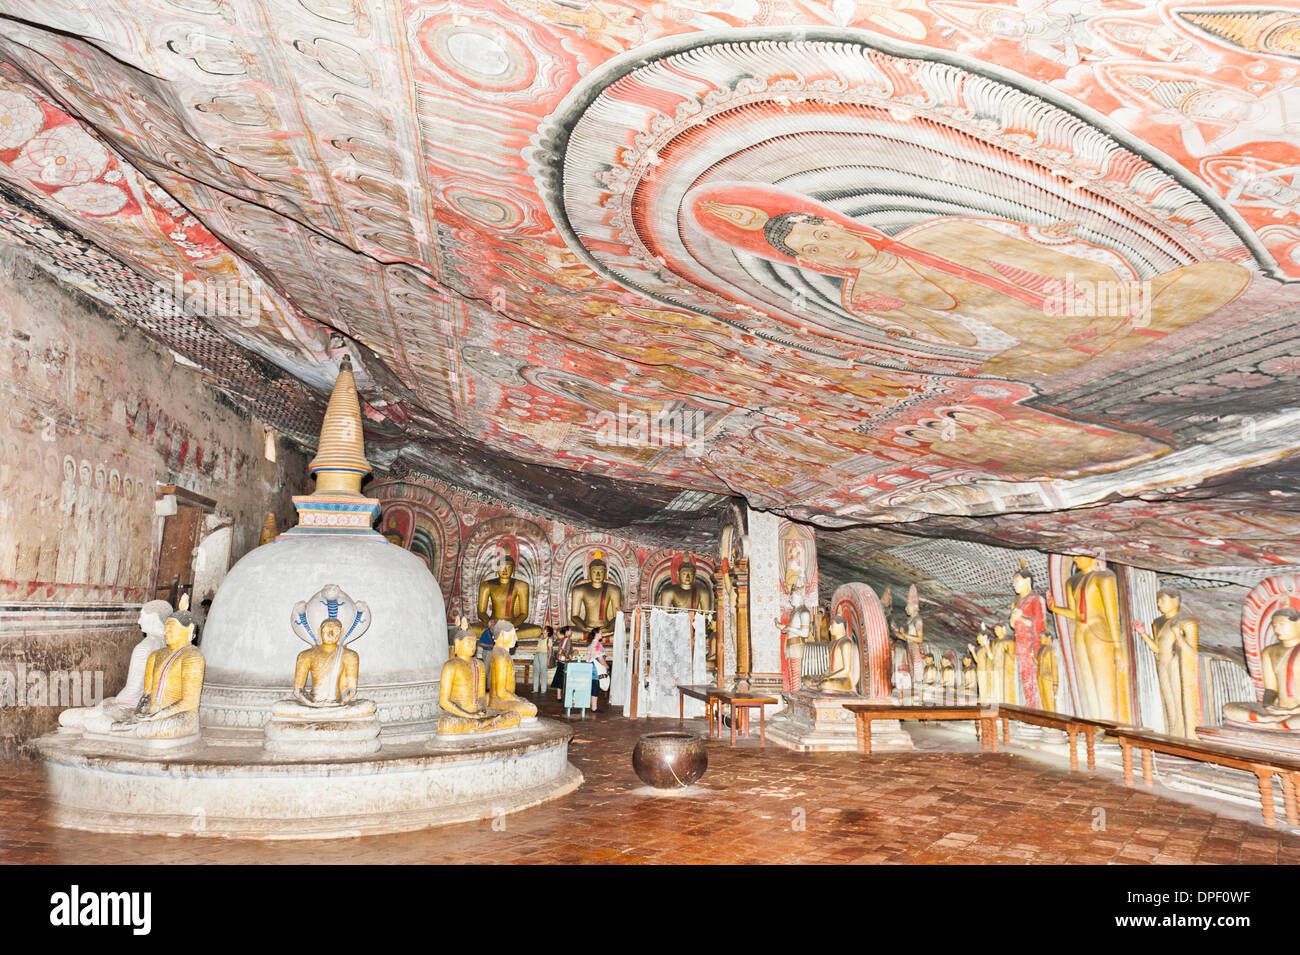 Intérieur entièrement peint prix de la grotte, murales colorées sur les murs et le plafond, des fresques, des statues et un stoupa Banque D'Images